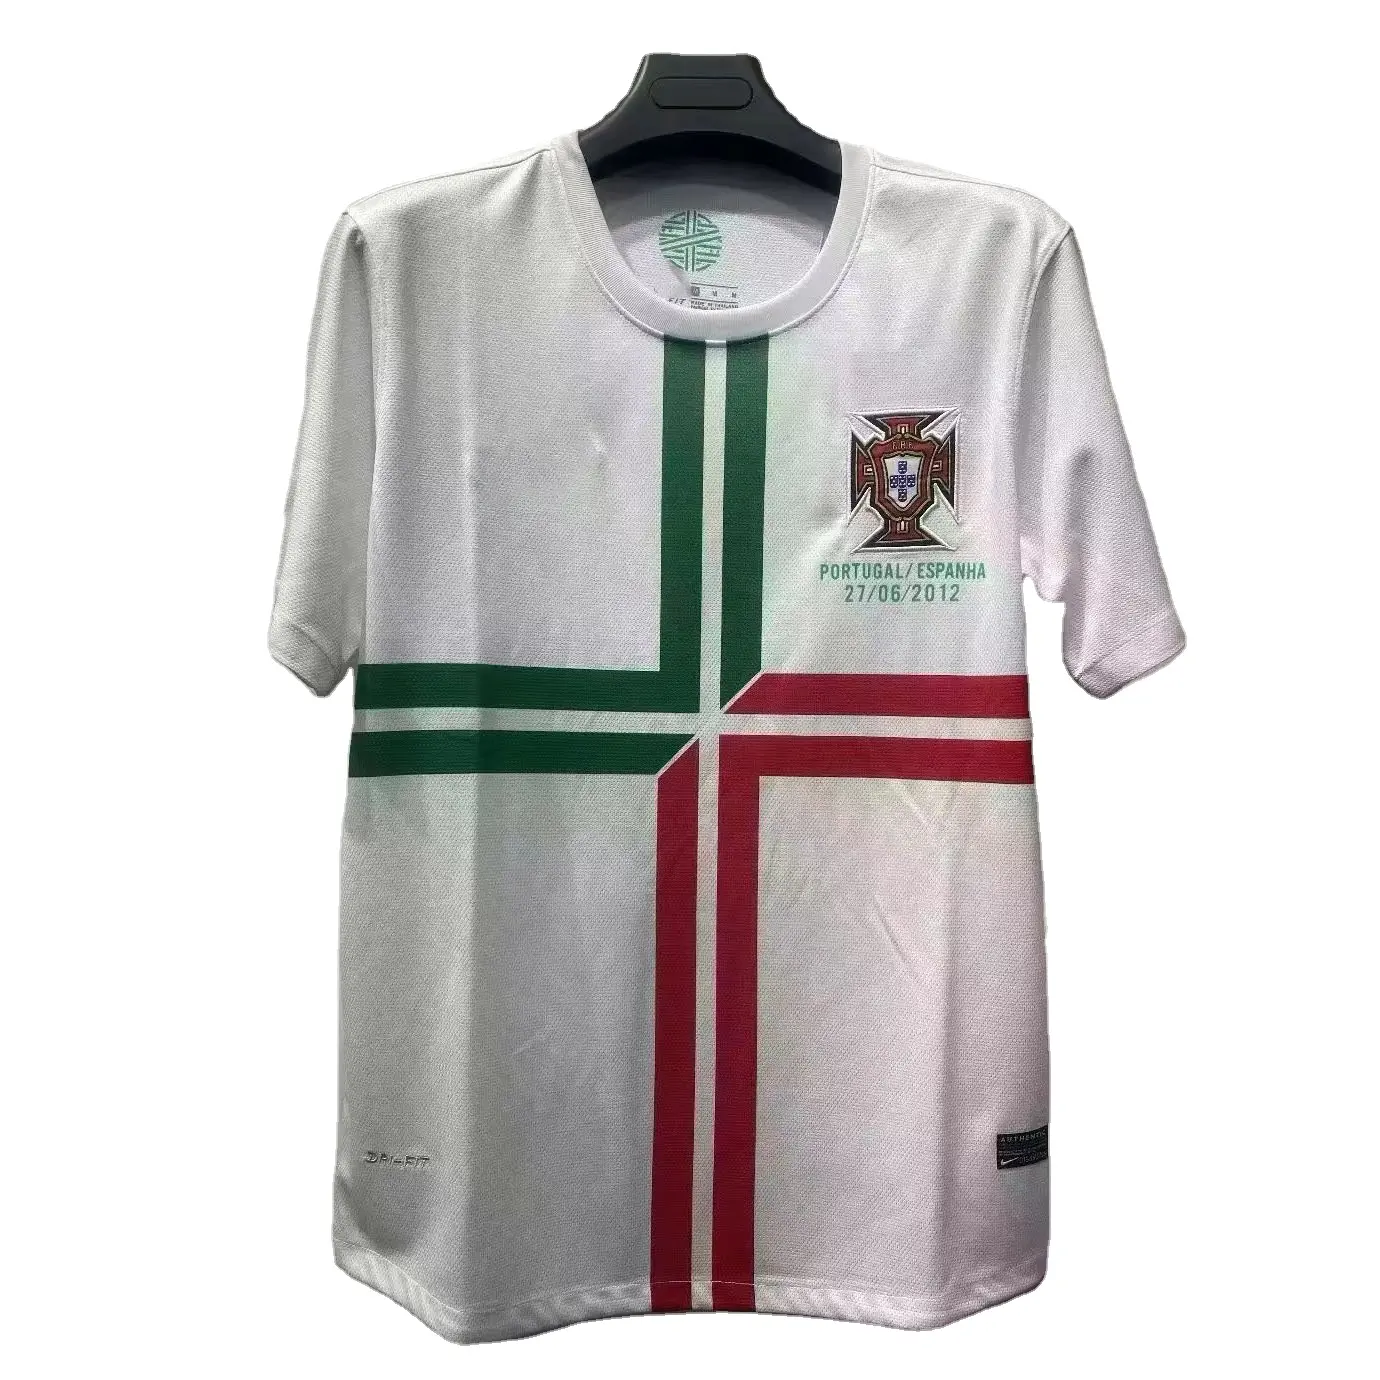 Maglia da calcio 2012 europea portogallo maglia da calcio Ronaldo design originale della maglia della squadra nazionale di calcio